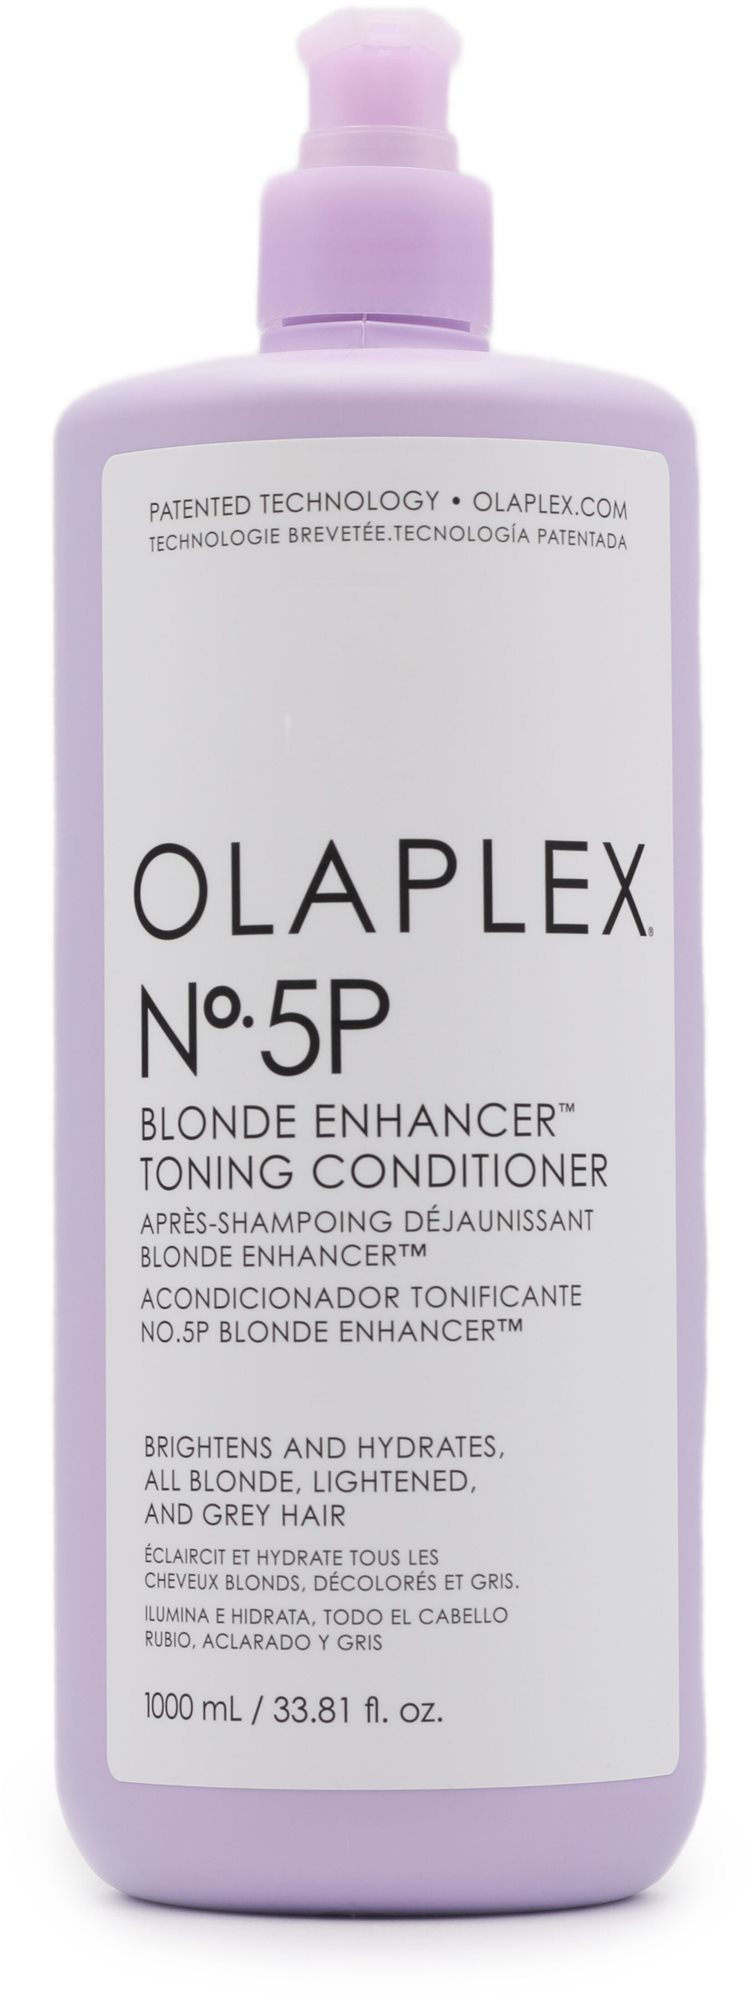 OLAPLEX No. 5P Blonde Enhancer Toning Conditioner 1000 ml